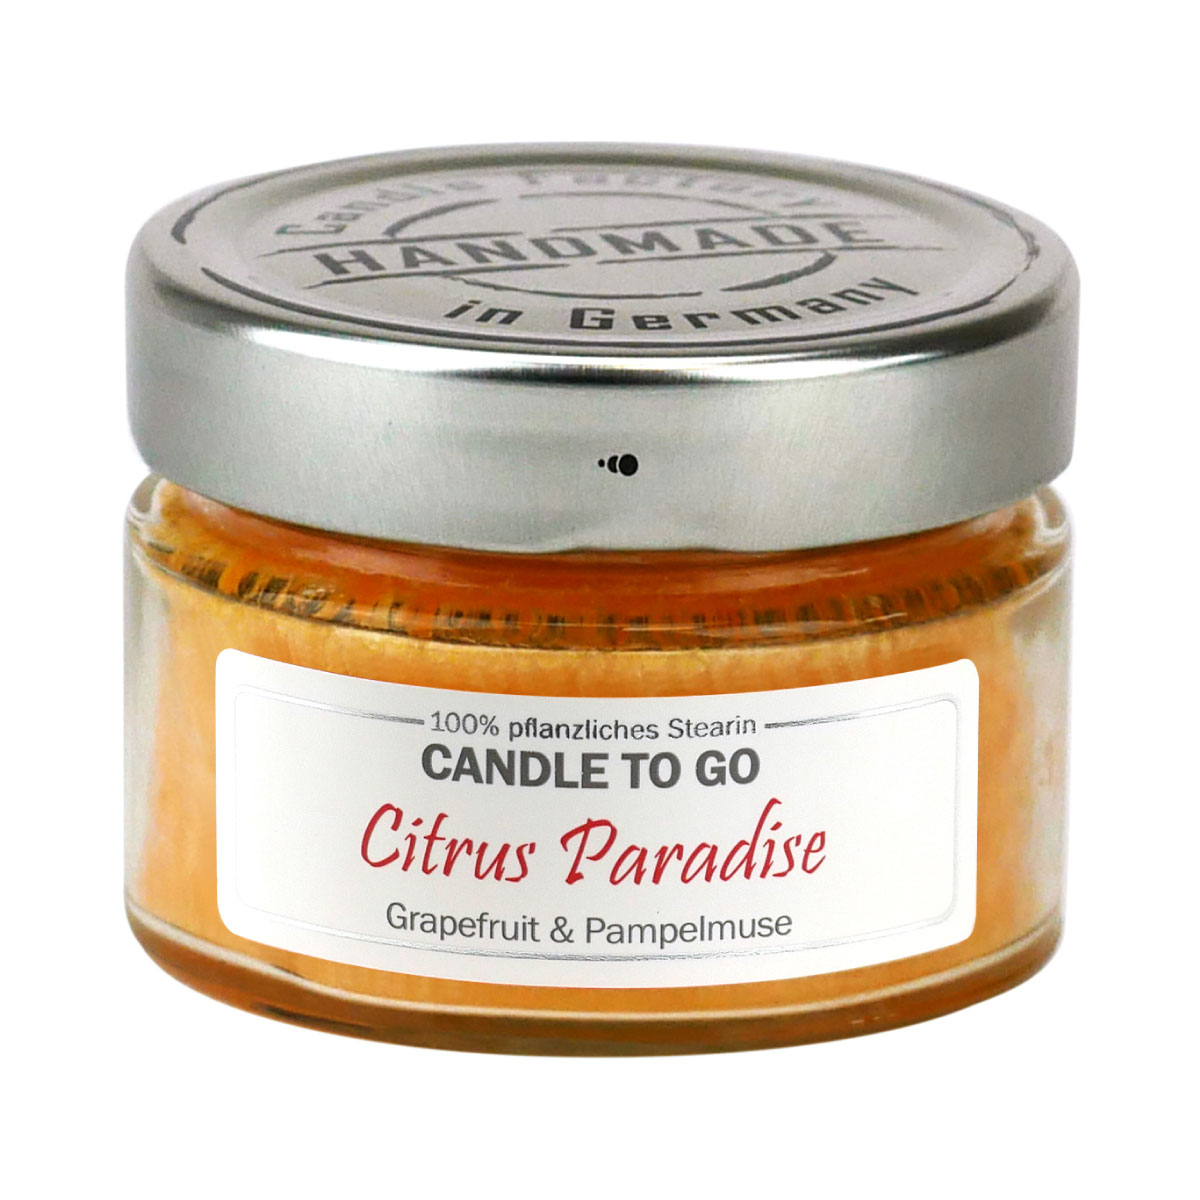 Citrus Paradise - Candle to Go die Duftkerze für unterwegs